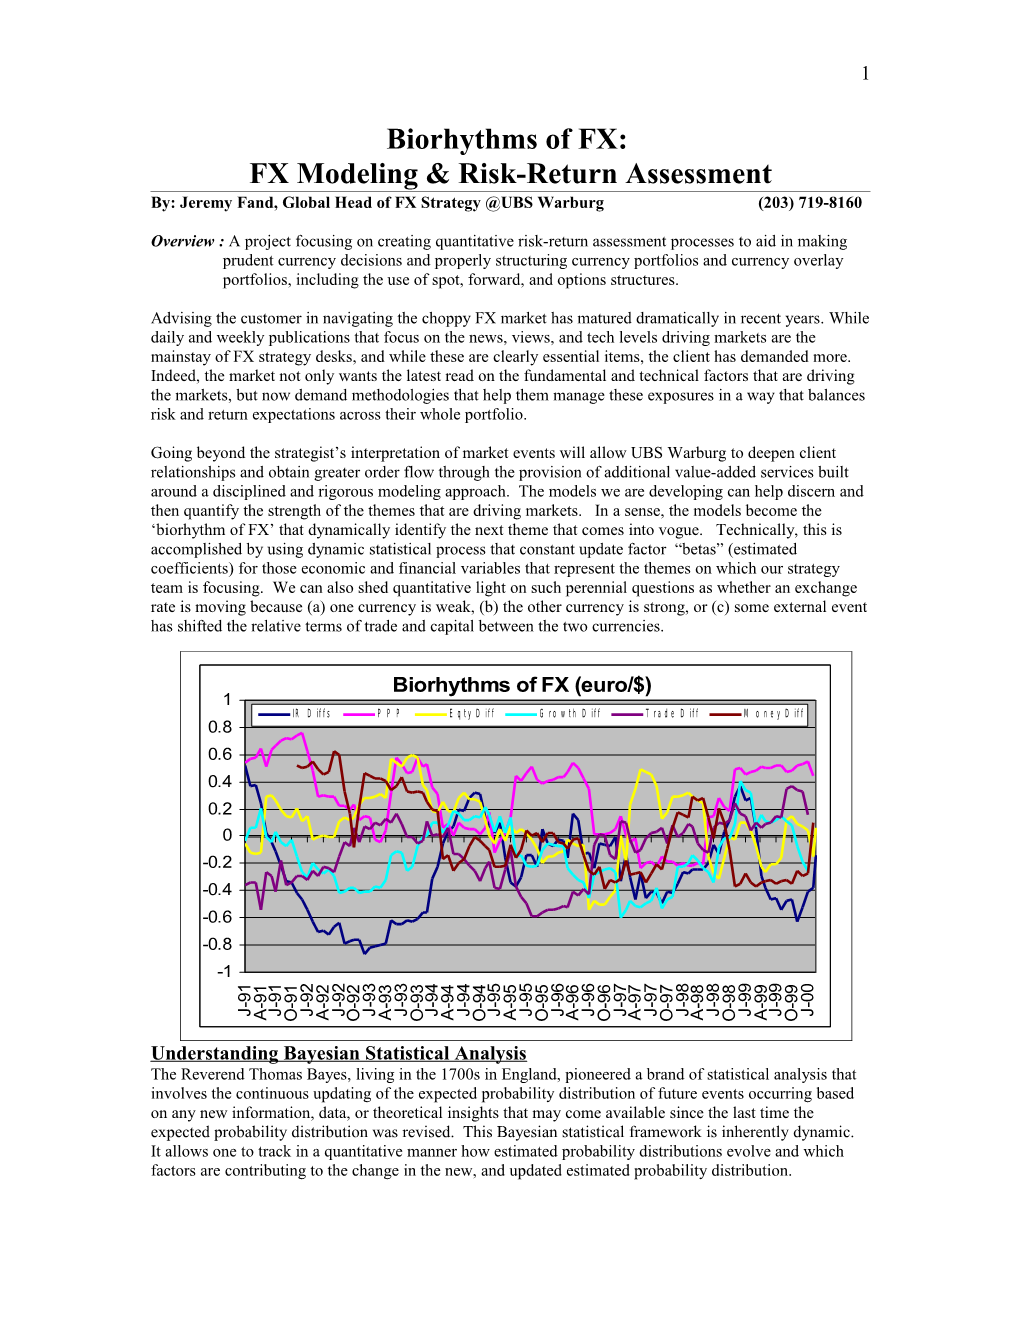 FX Modeling & Risk-Return Assessment